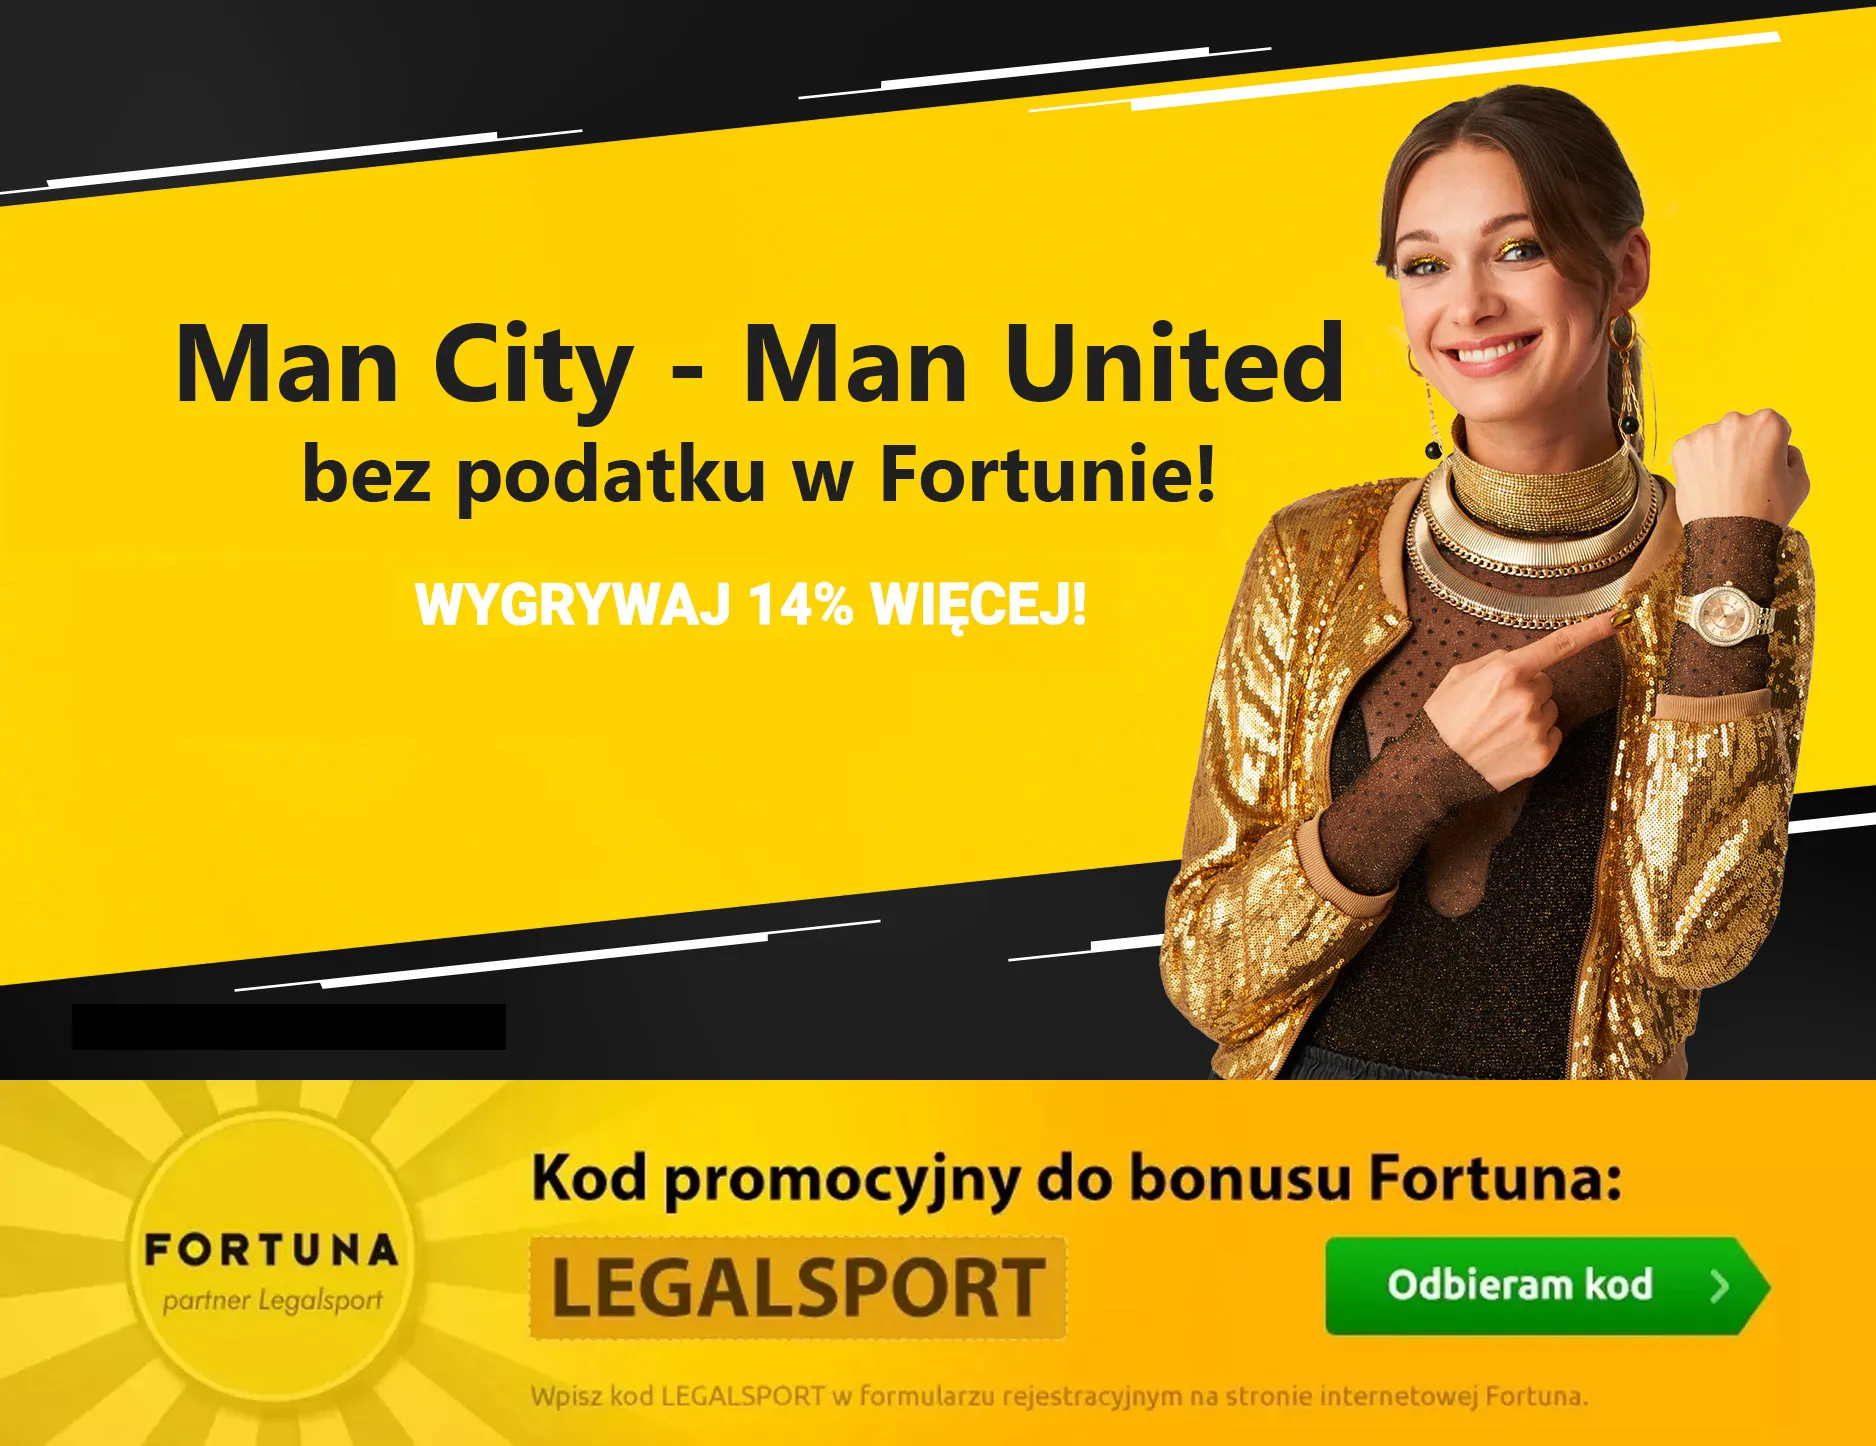 Man City - Man United bez podatku w Fortunie!